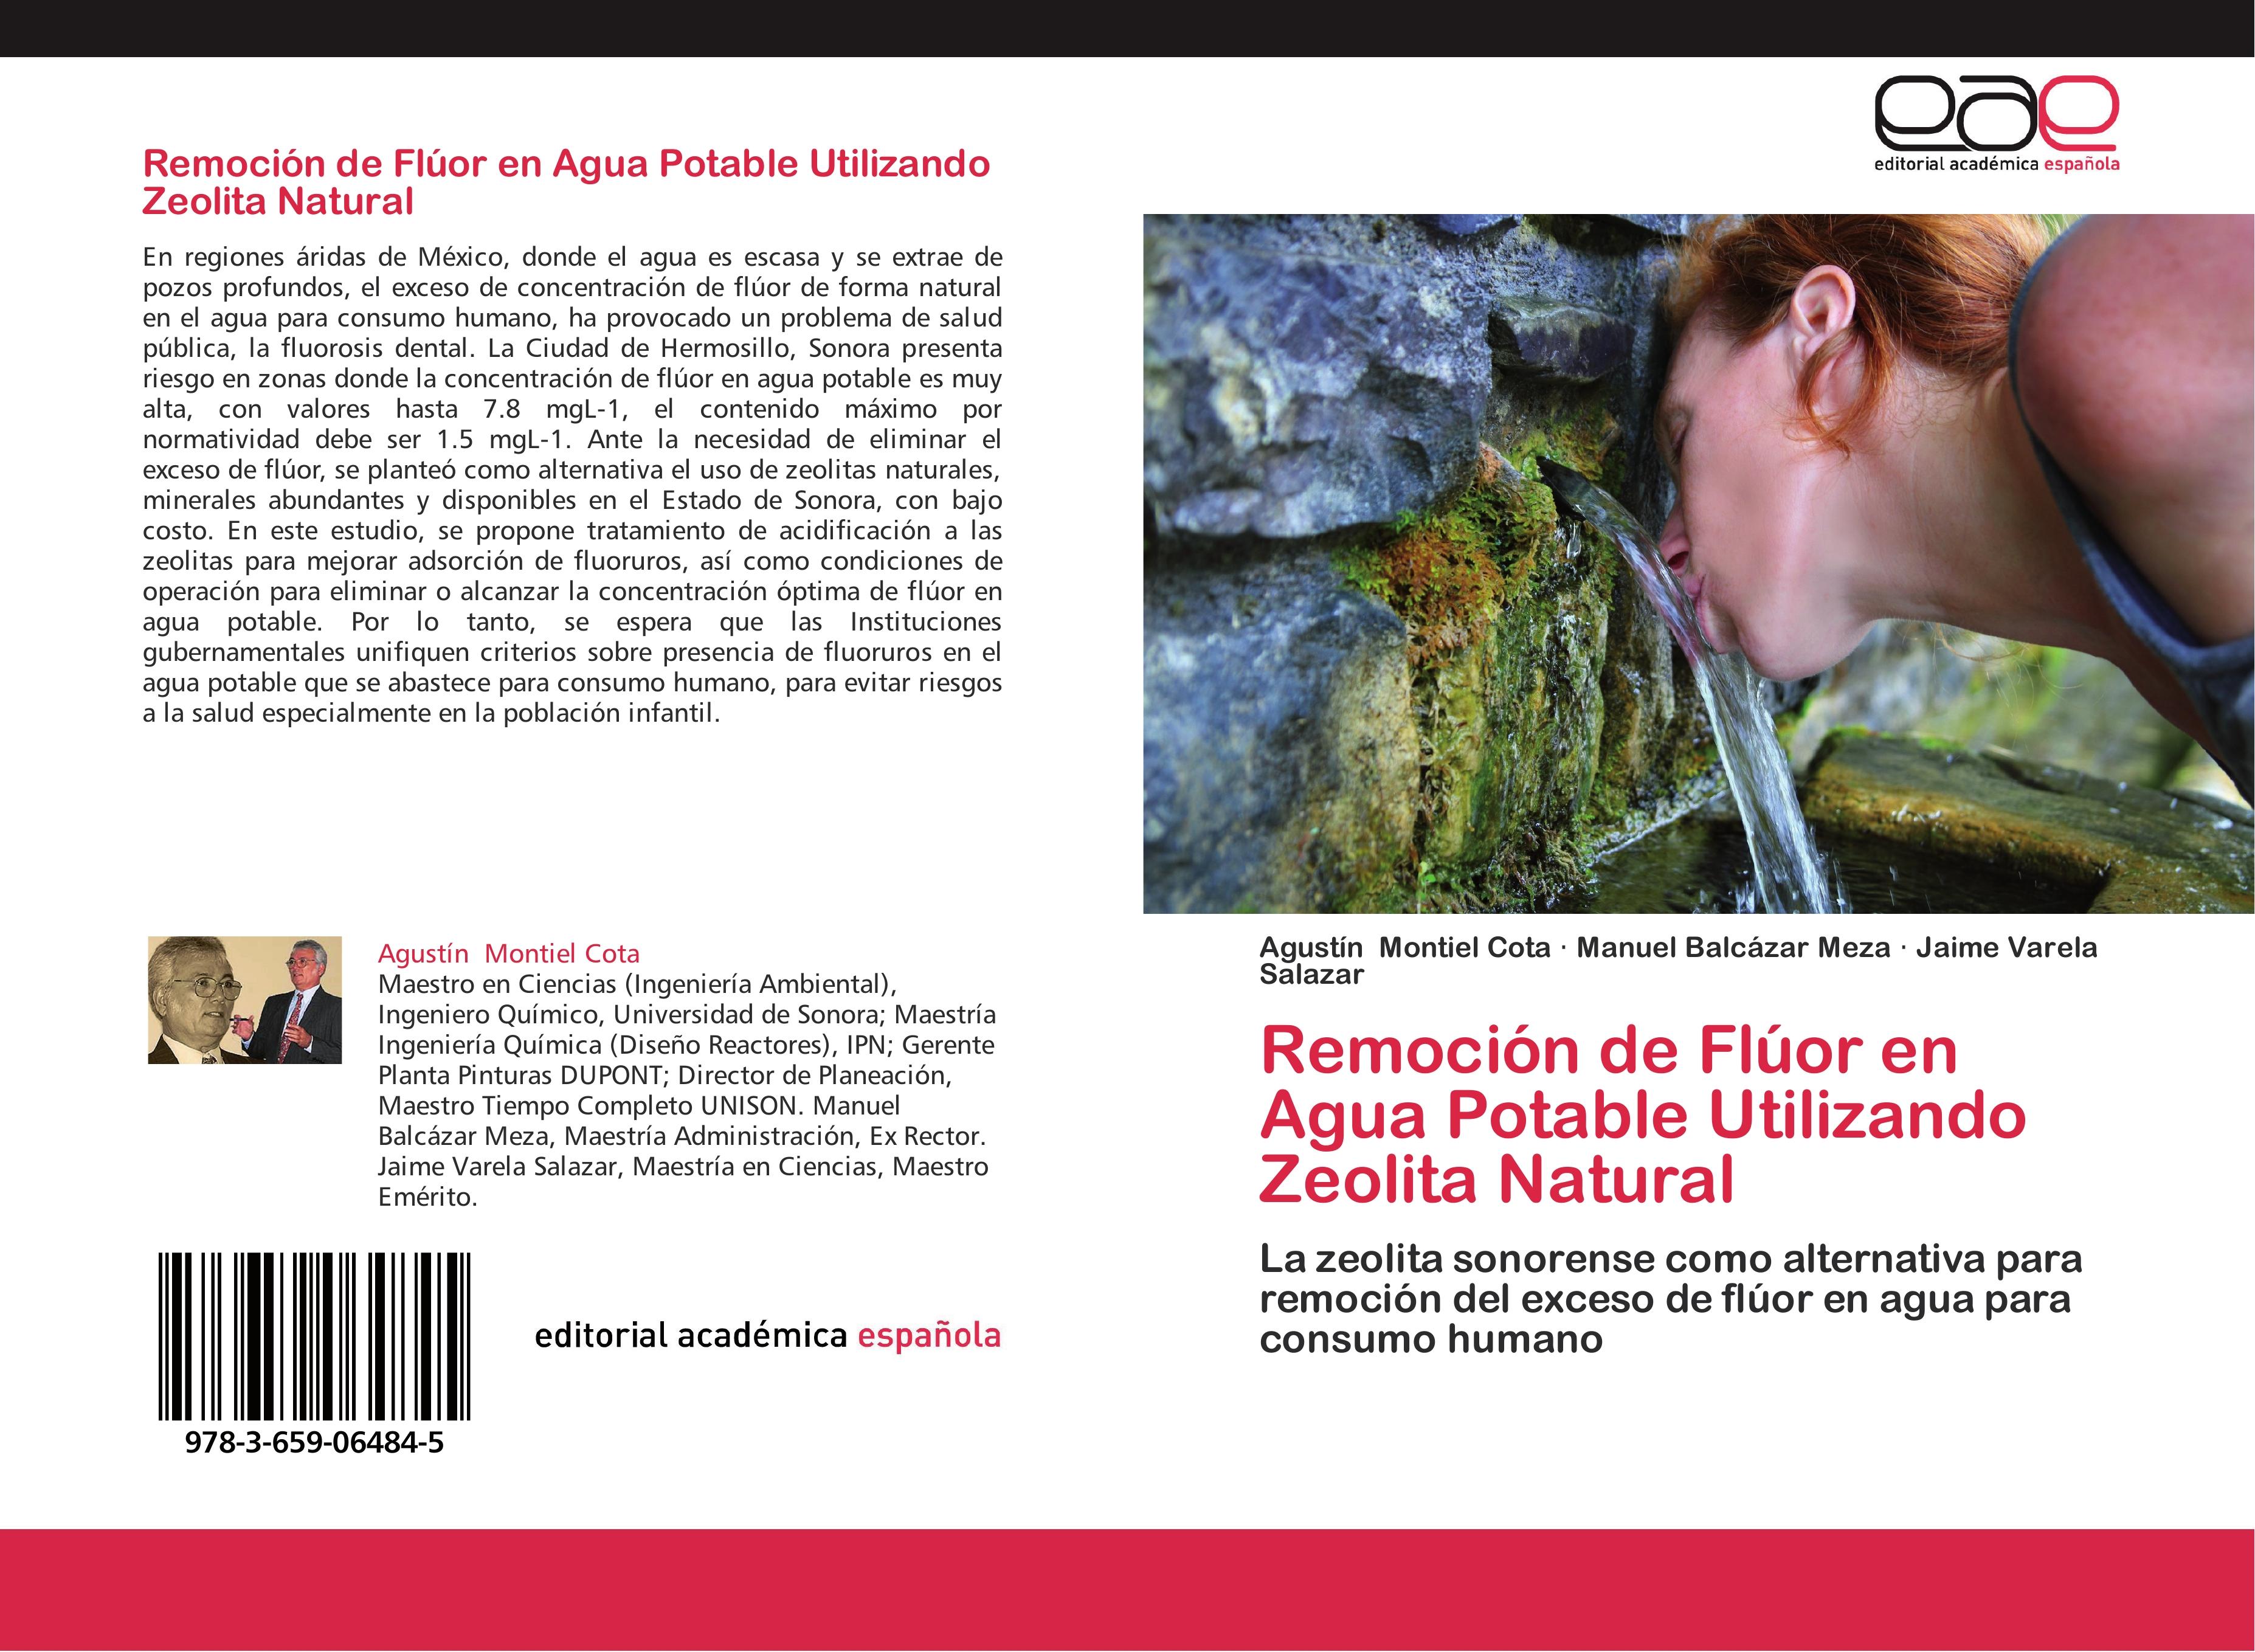 Remoción de Flúor en Agua Potable Utilizando Zeolita Natural de Agustín  Montiel Cota, Manuel Balcázar Meza, Jaime Varela Salazar: New (2012)